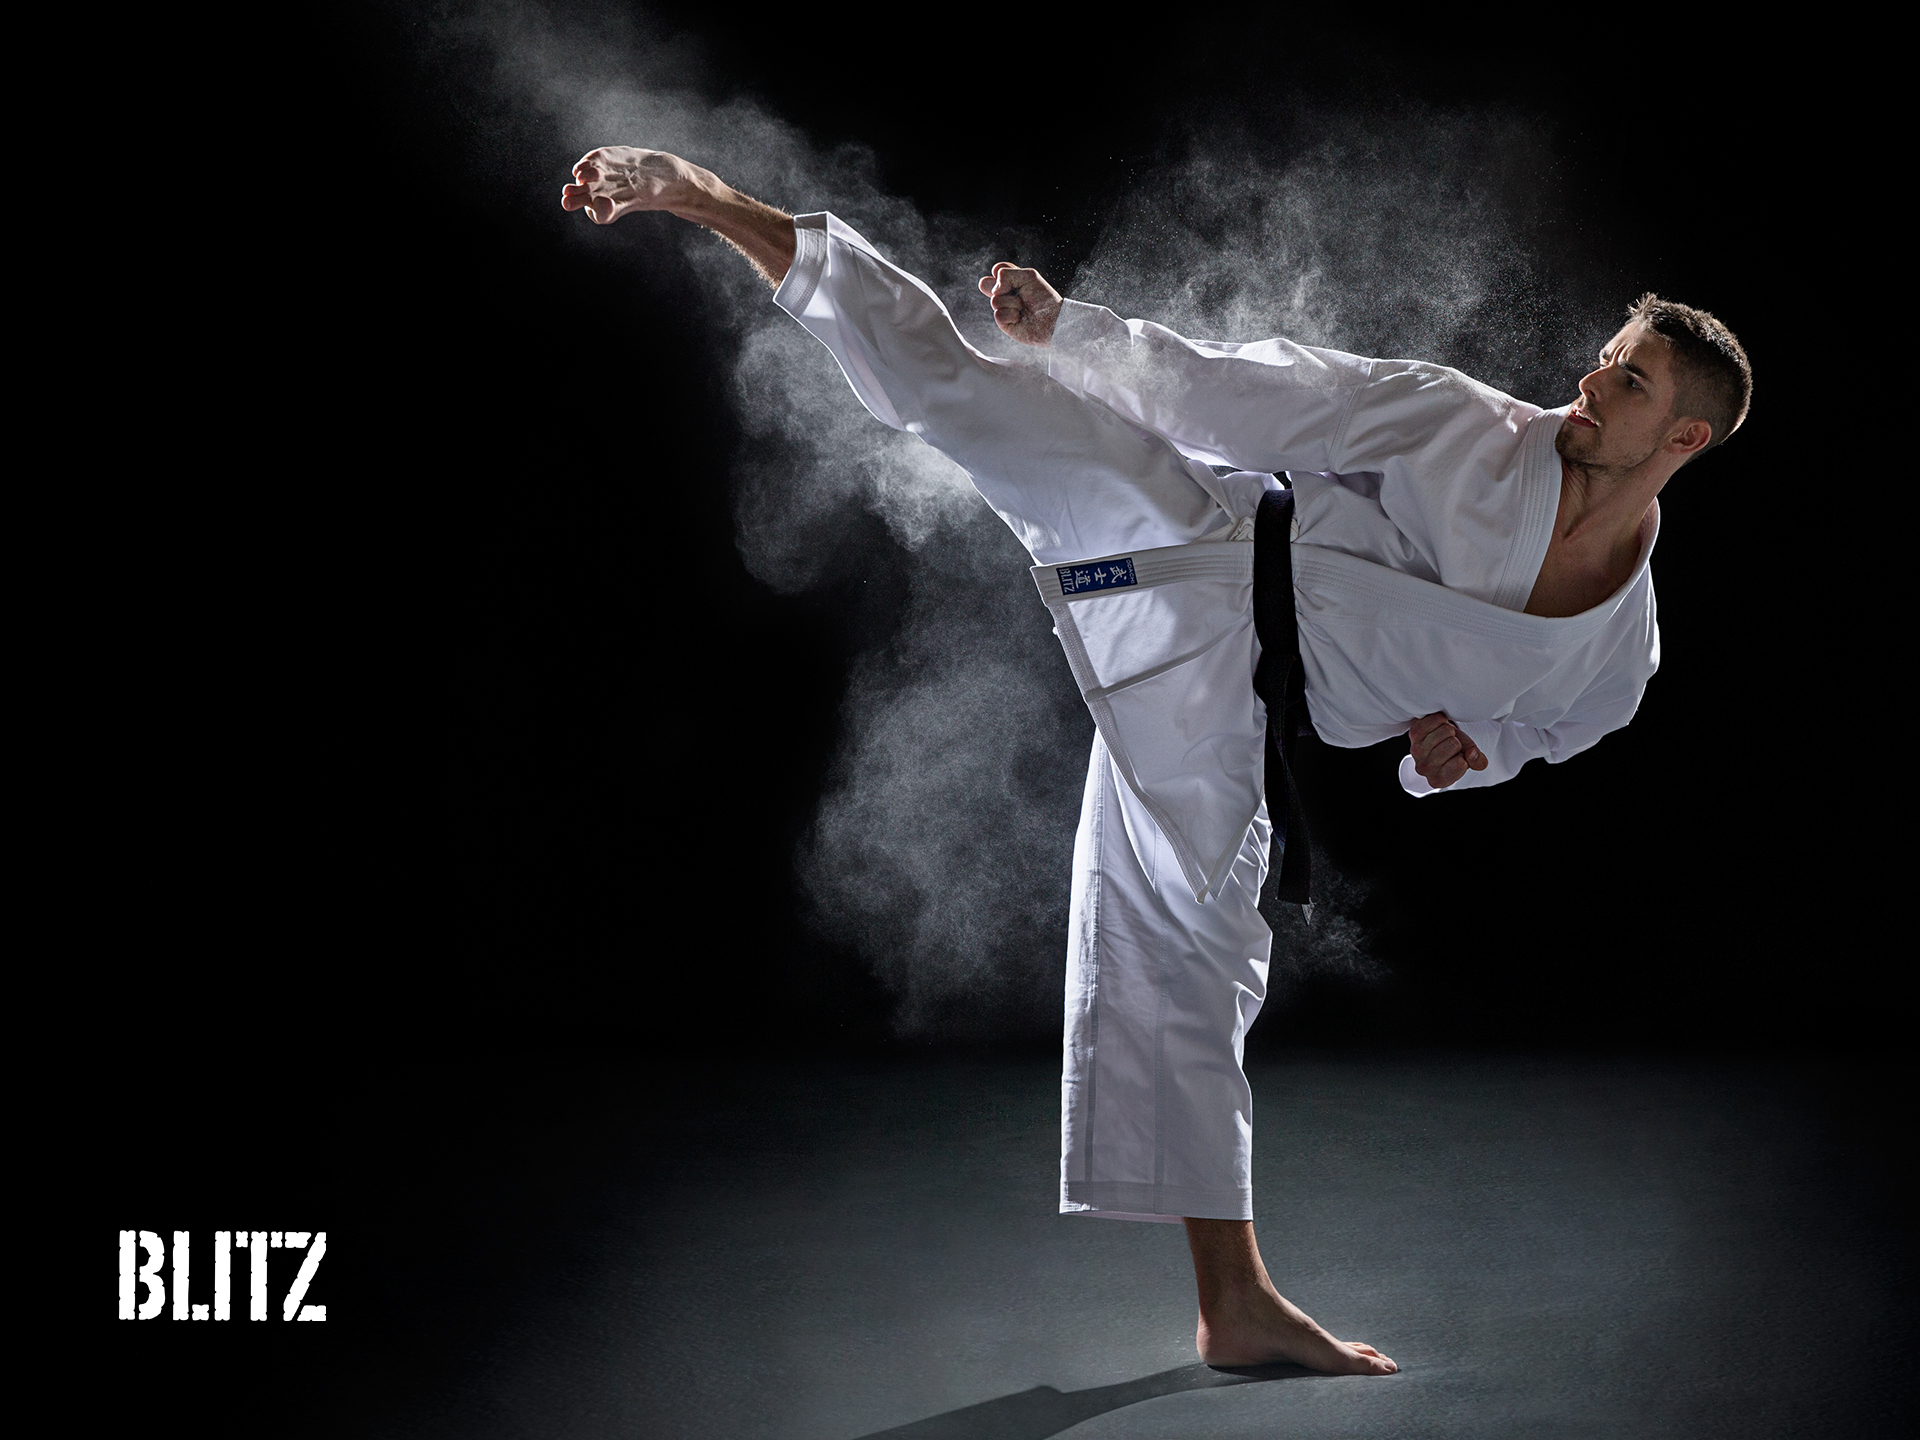 Đòn đá chẻ trong taekwondo có hiệu quả như thế nào?
